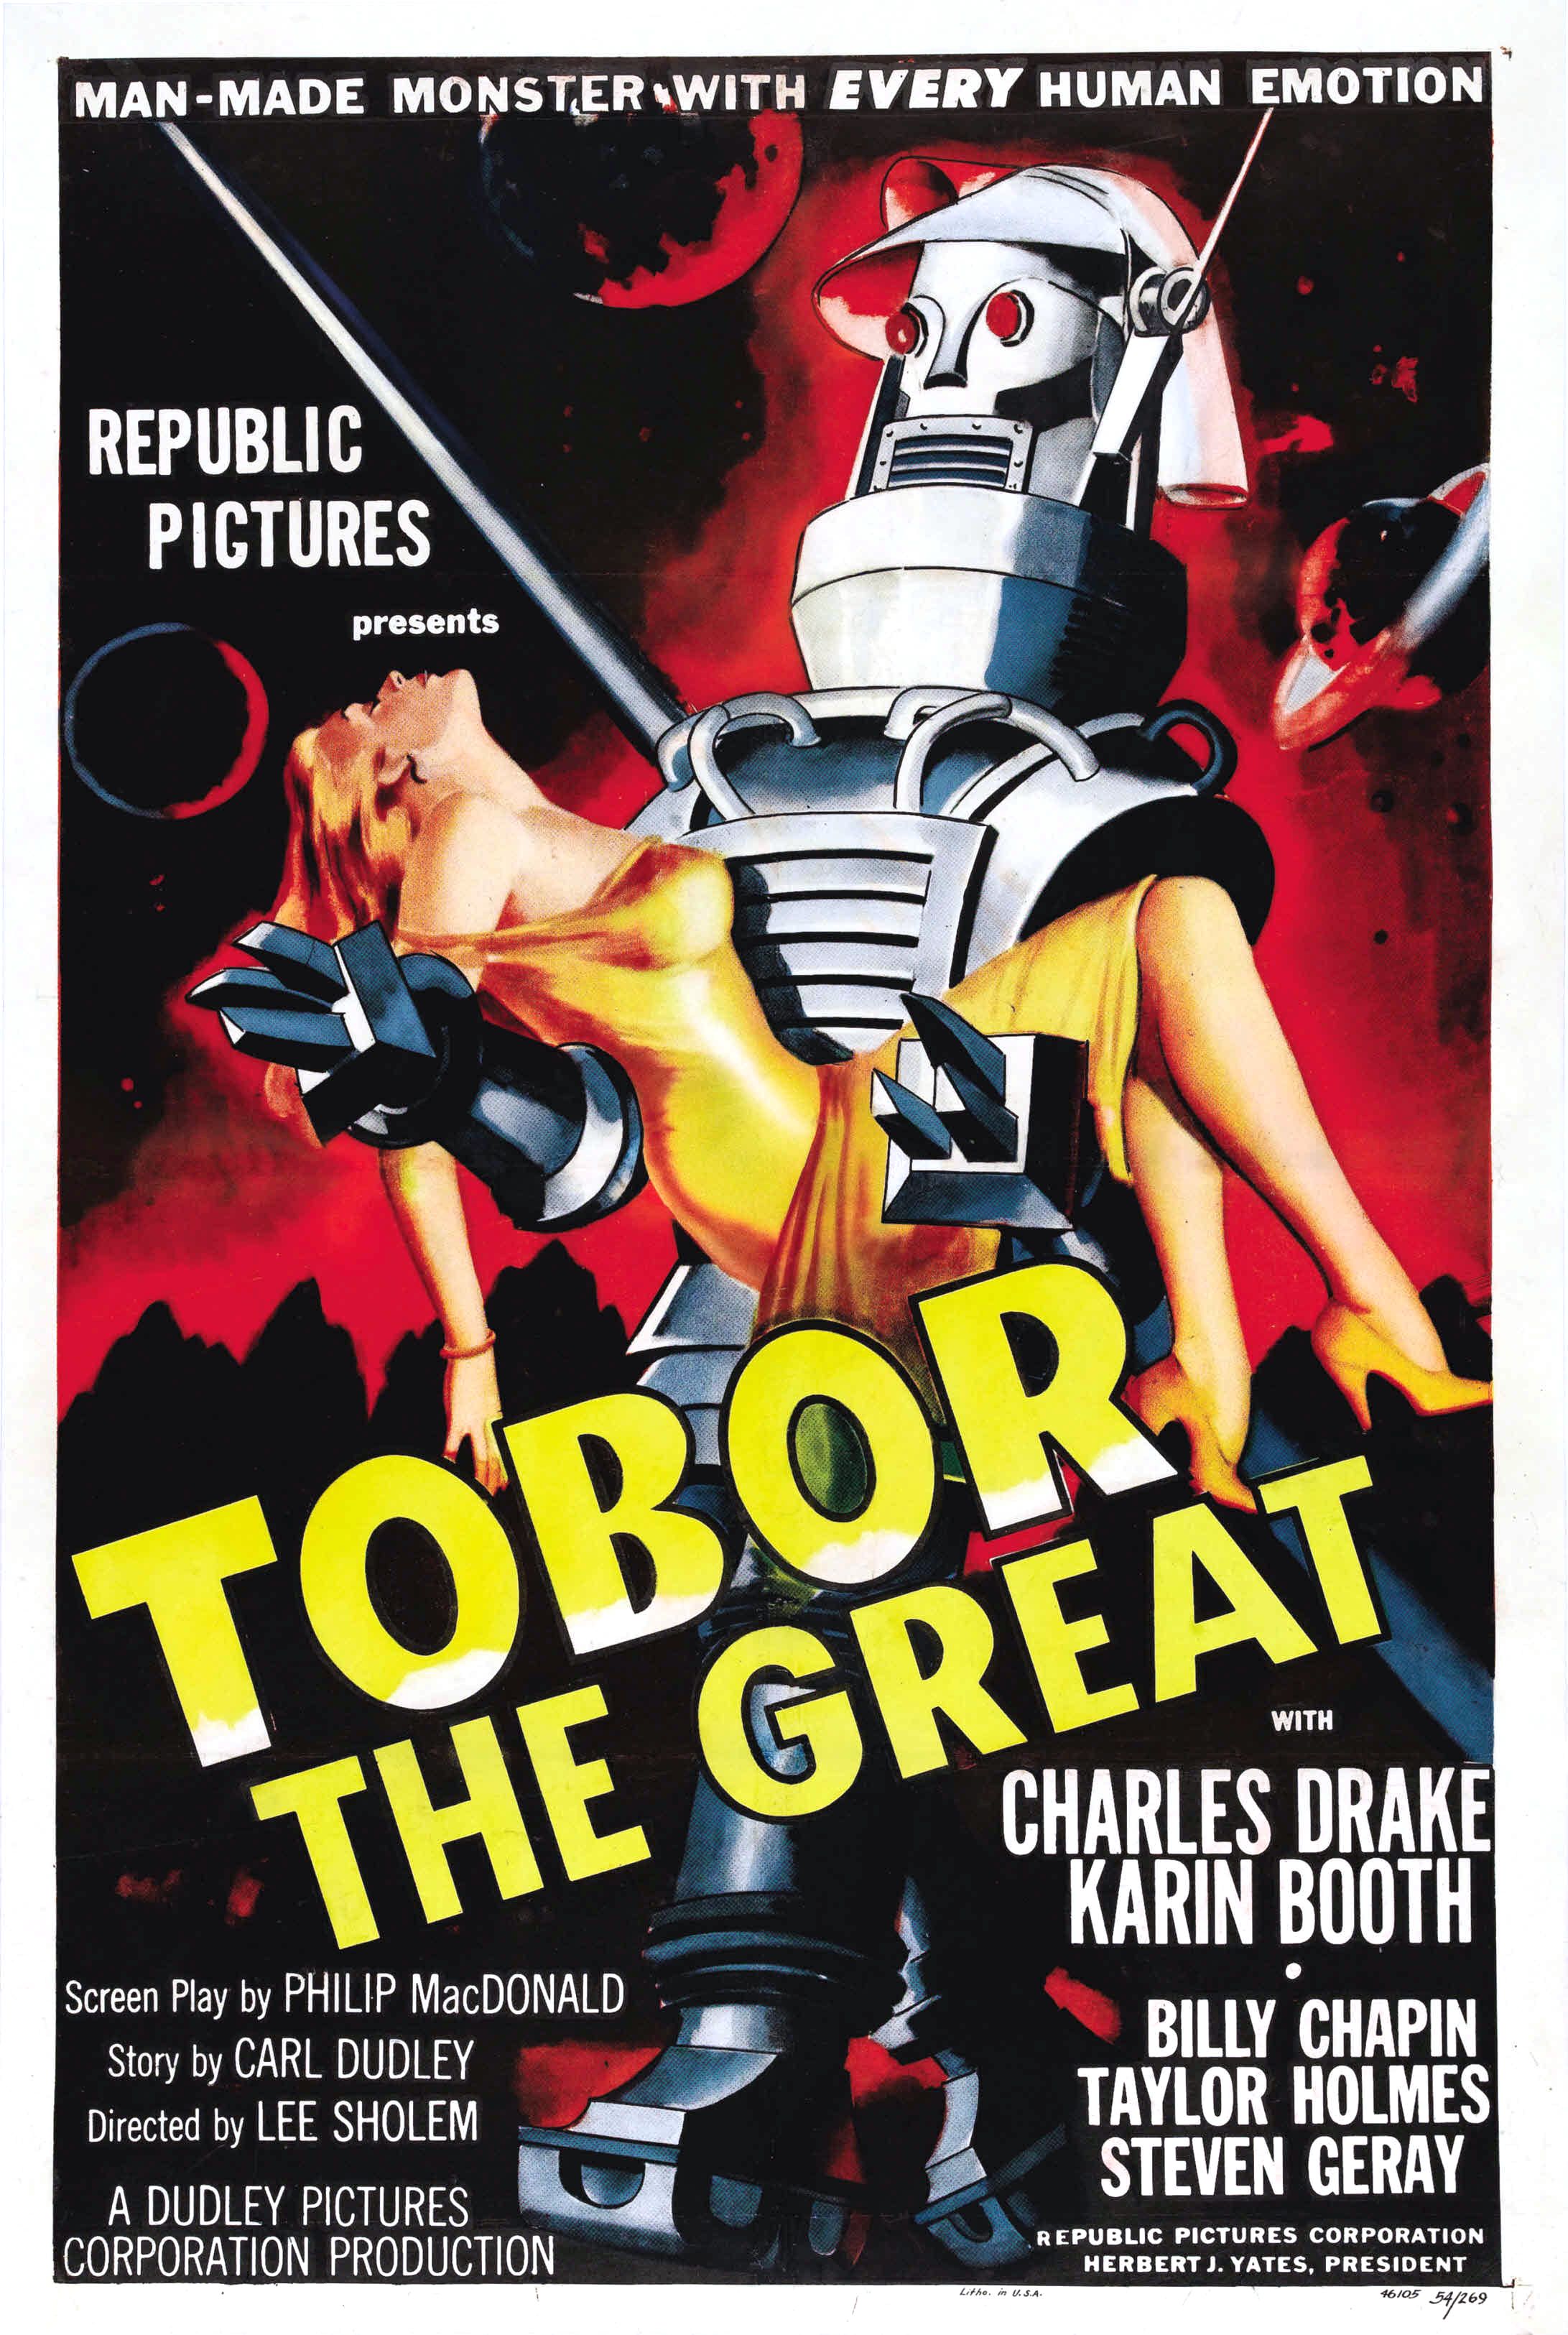 Sinema Sanattır: Muhteşem Afişlere Sahip 20 Film 7 – tobor the great poster 01